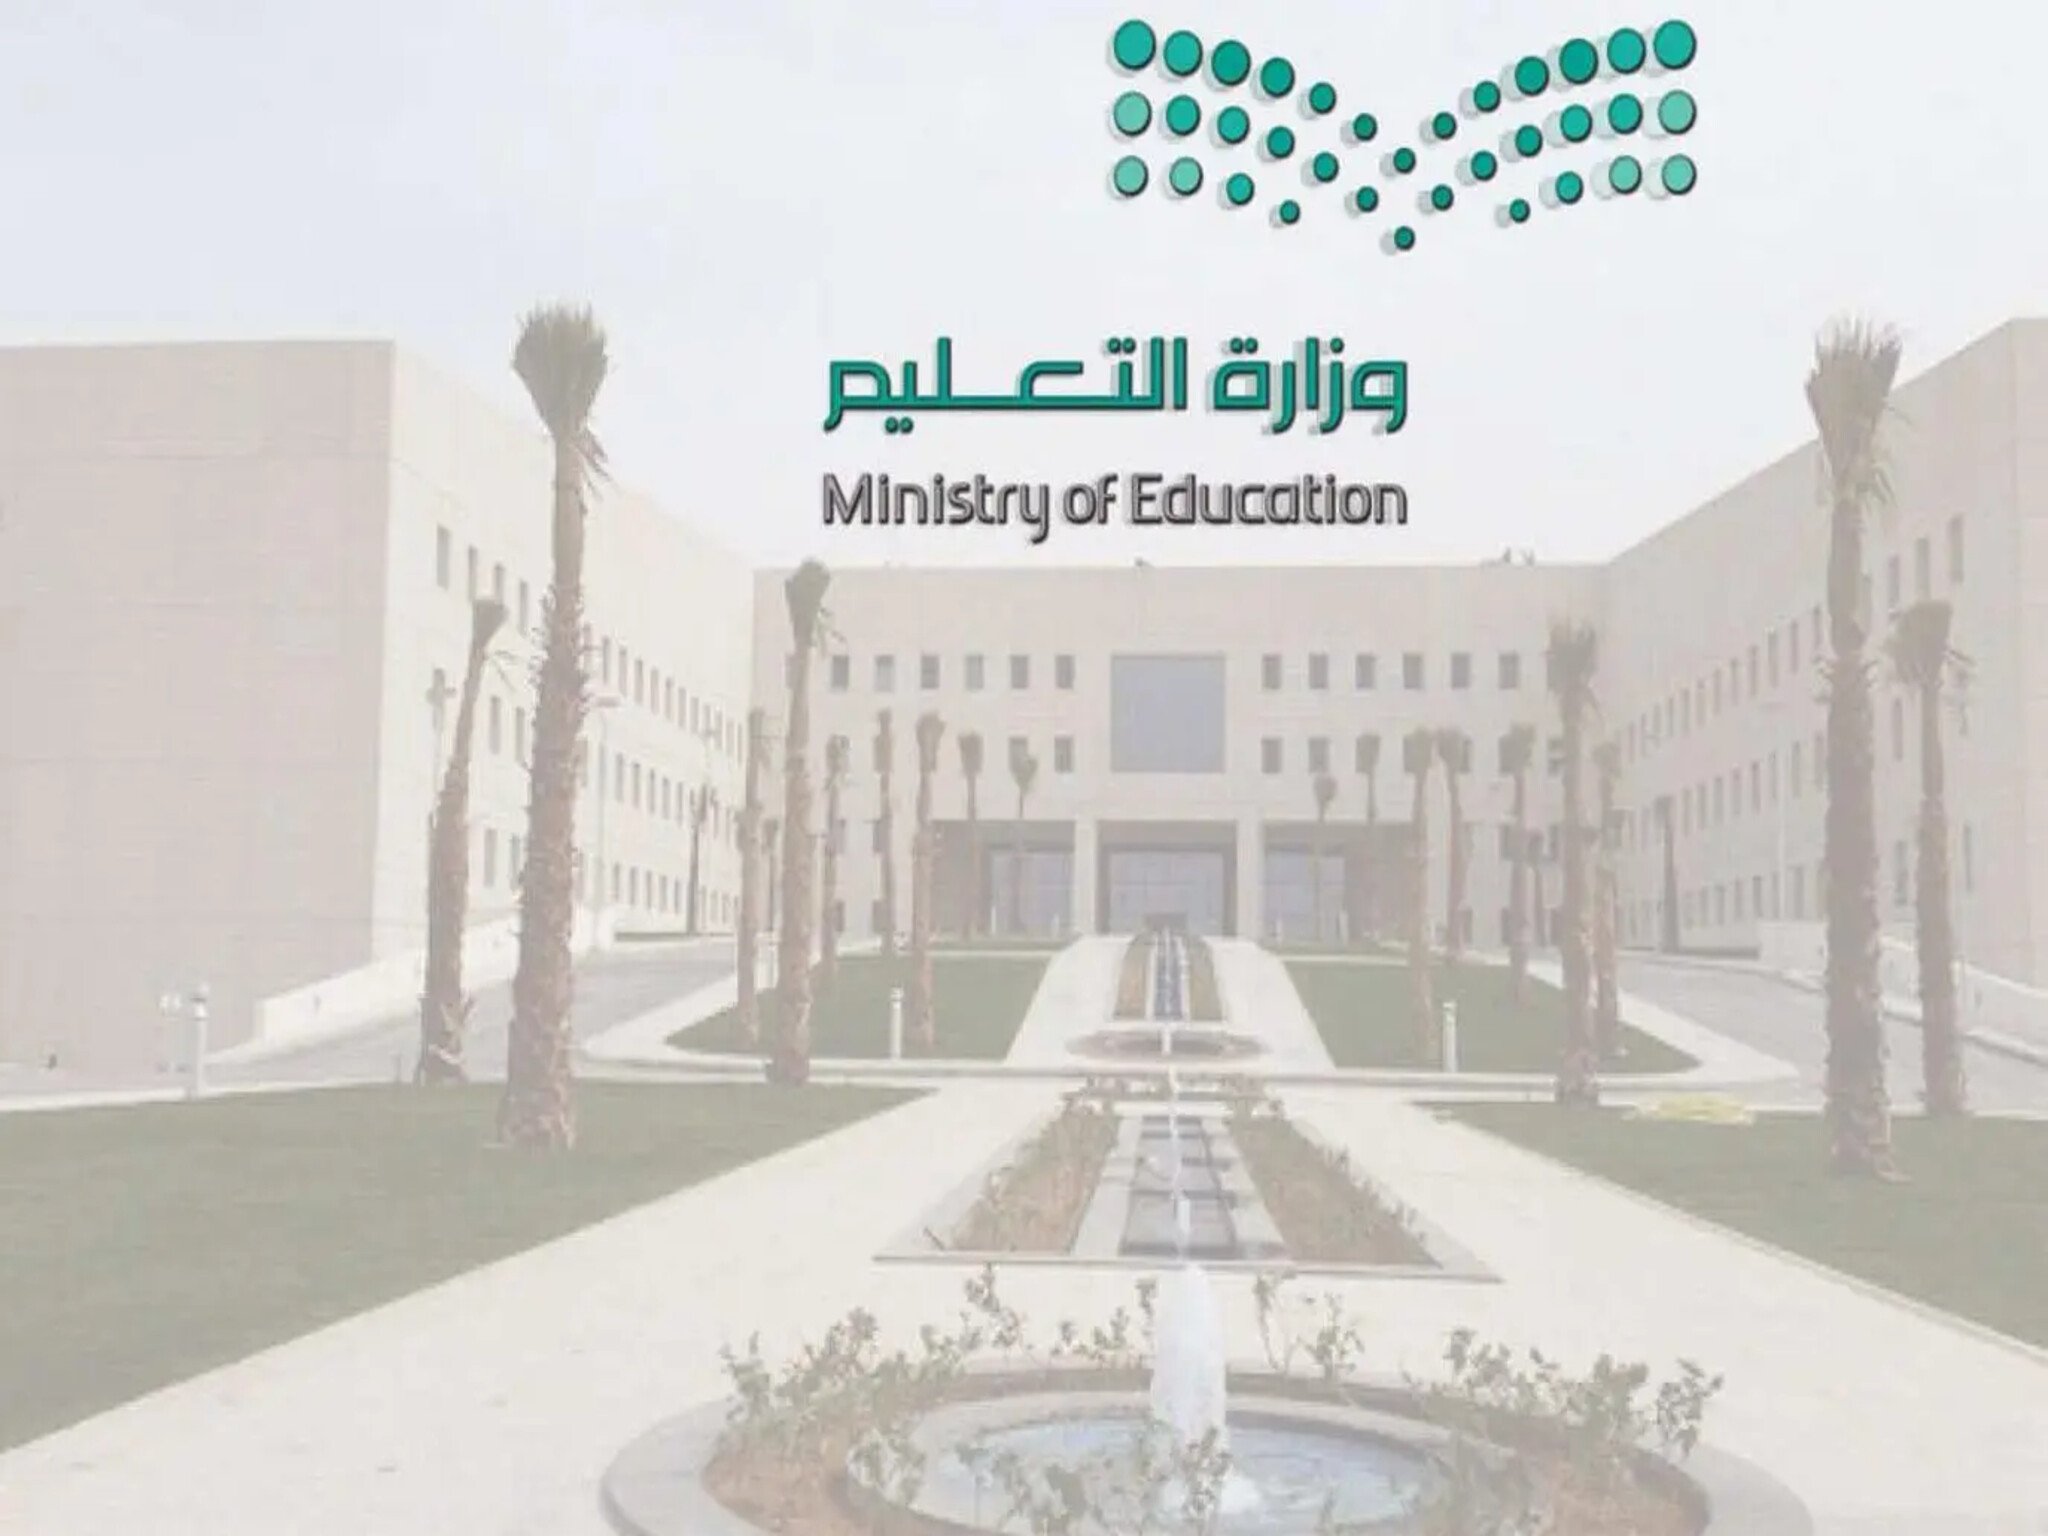 وزارة التعليم السعودية تحدد موعد بداية التوقيت الصيفي في المدارس 1445هـ